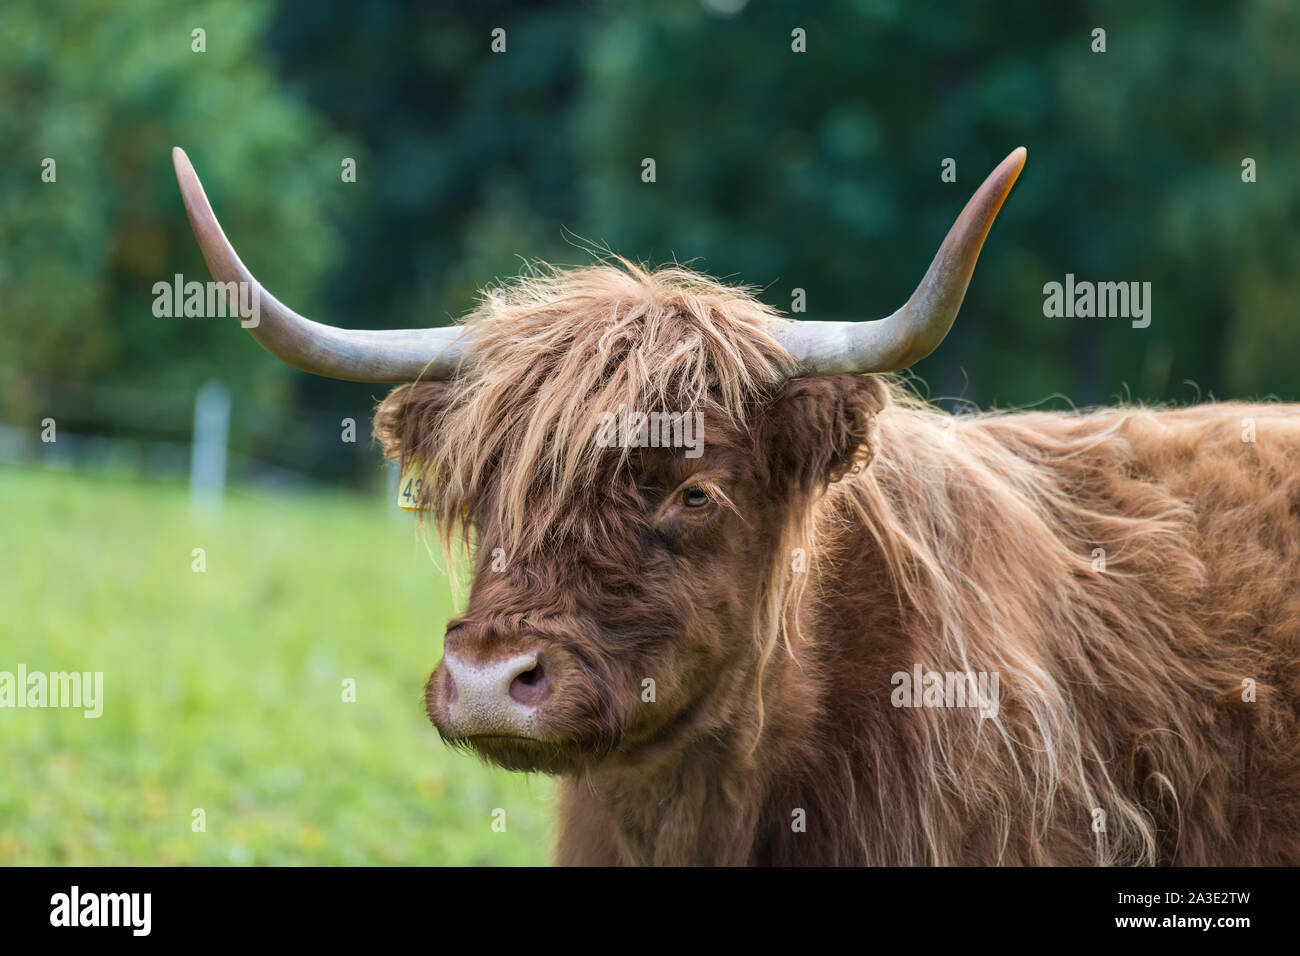 Highland bovini mucca ritratto sul verde dei prati. Bos taurus. Faccia particolare di uno domesticato gli animali con le corna e lungo pelo ondulato sul pascolo rurale. Foto Stock